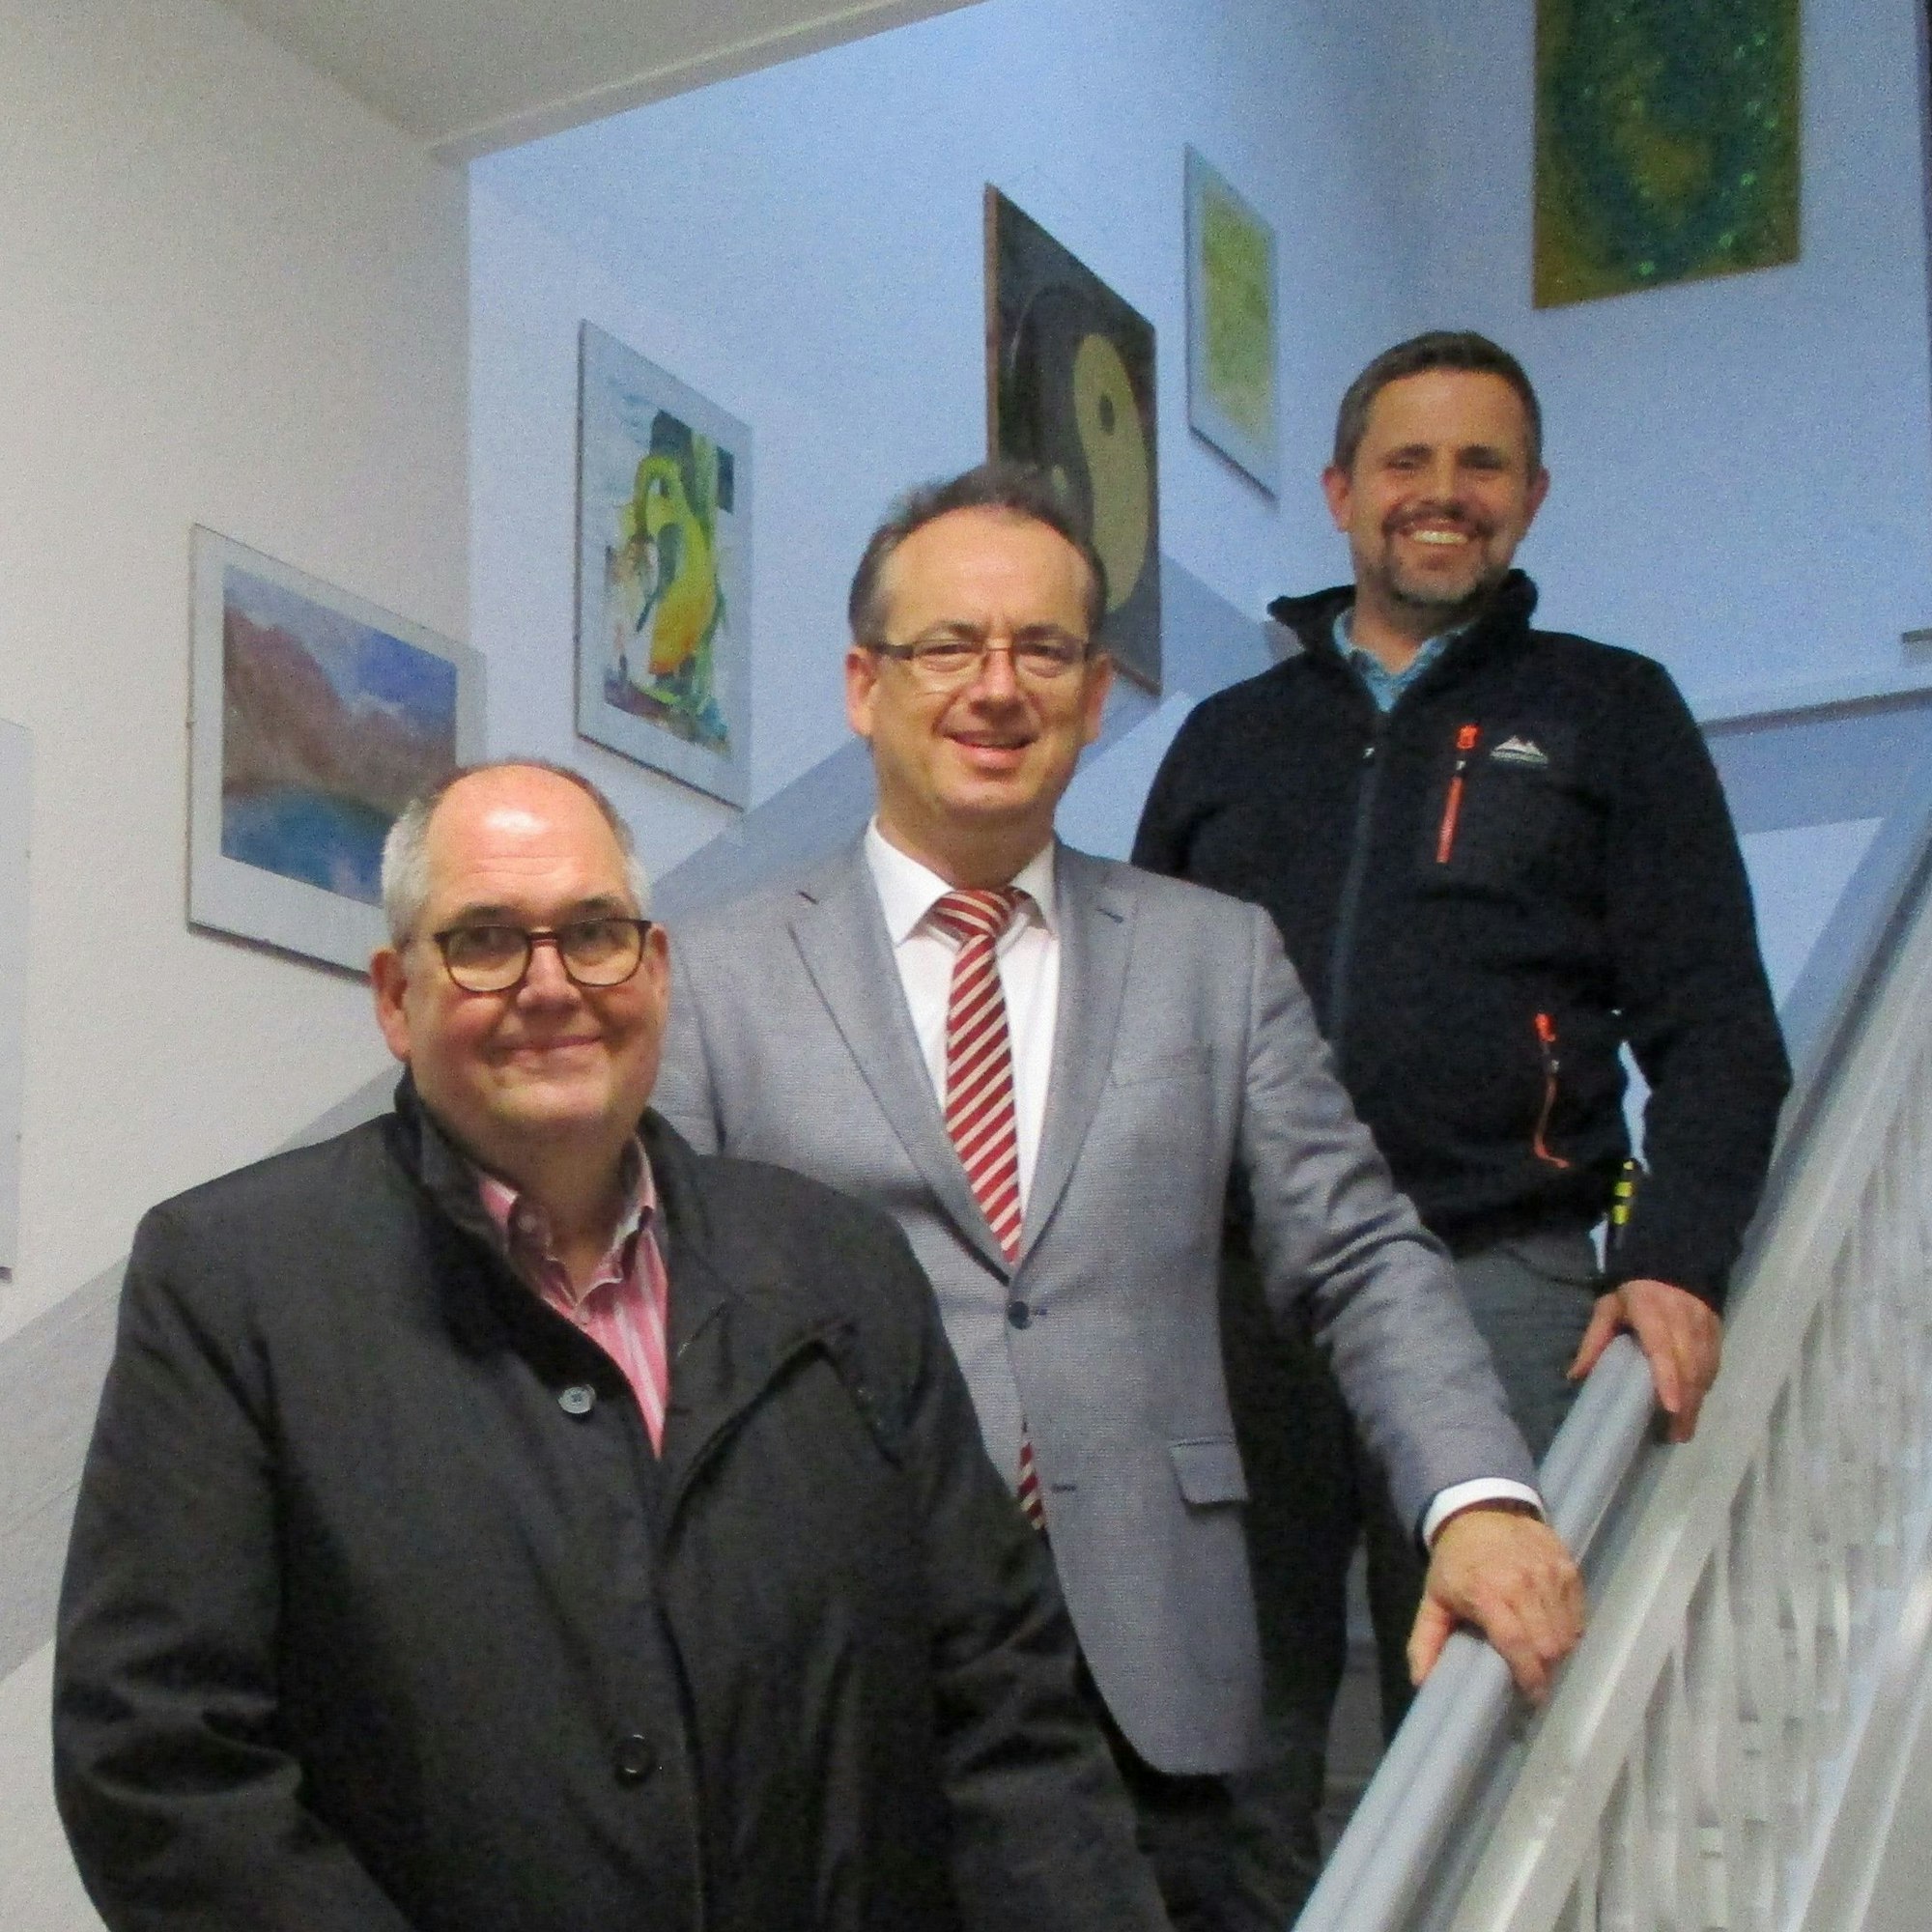 Von der Rheinbacher Umsetzung der NRW-Knastkulturwoche 2022 überzeugte sich der Leitende Ministerialrat Dr. Stephan Neuheuser (Mitte) persönlich. Im Hintergrund sind verschiedenen Malereien zu sehen, zwei Männer in Anzügen sind Neuheusers Begleiter.